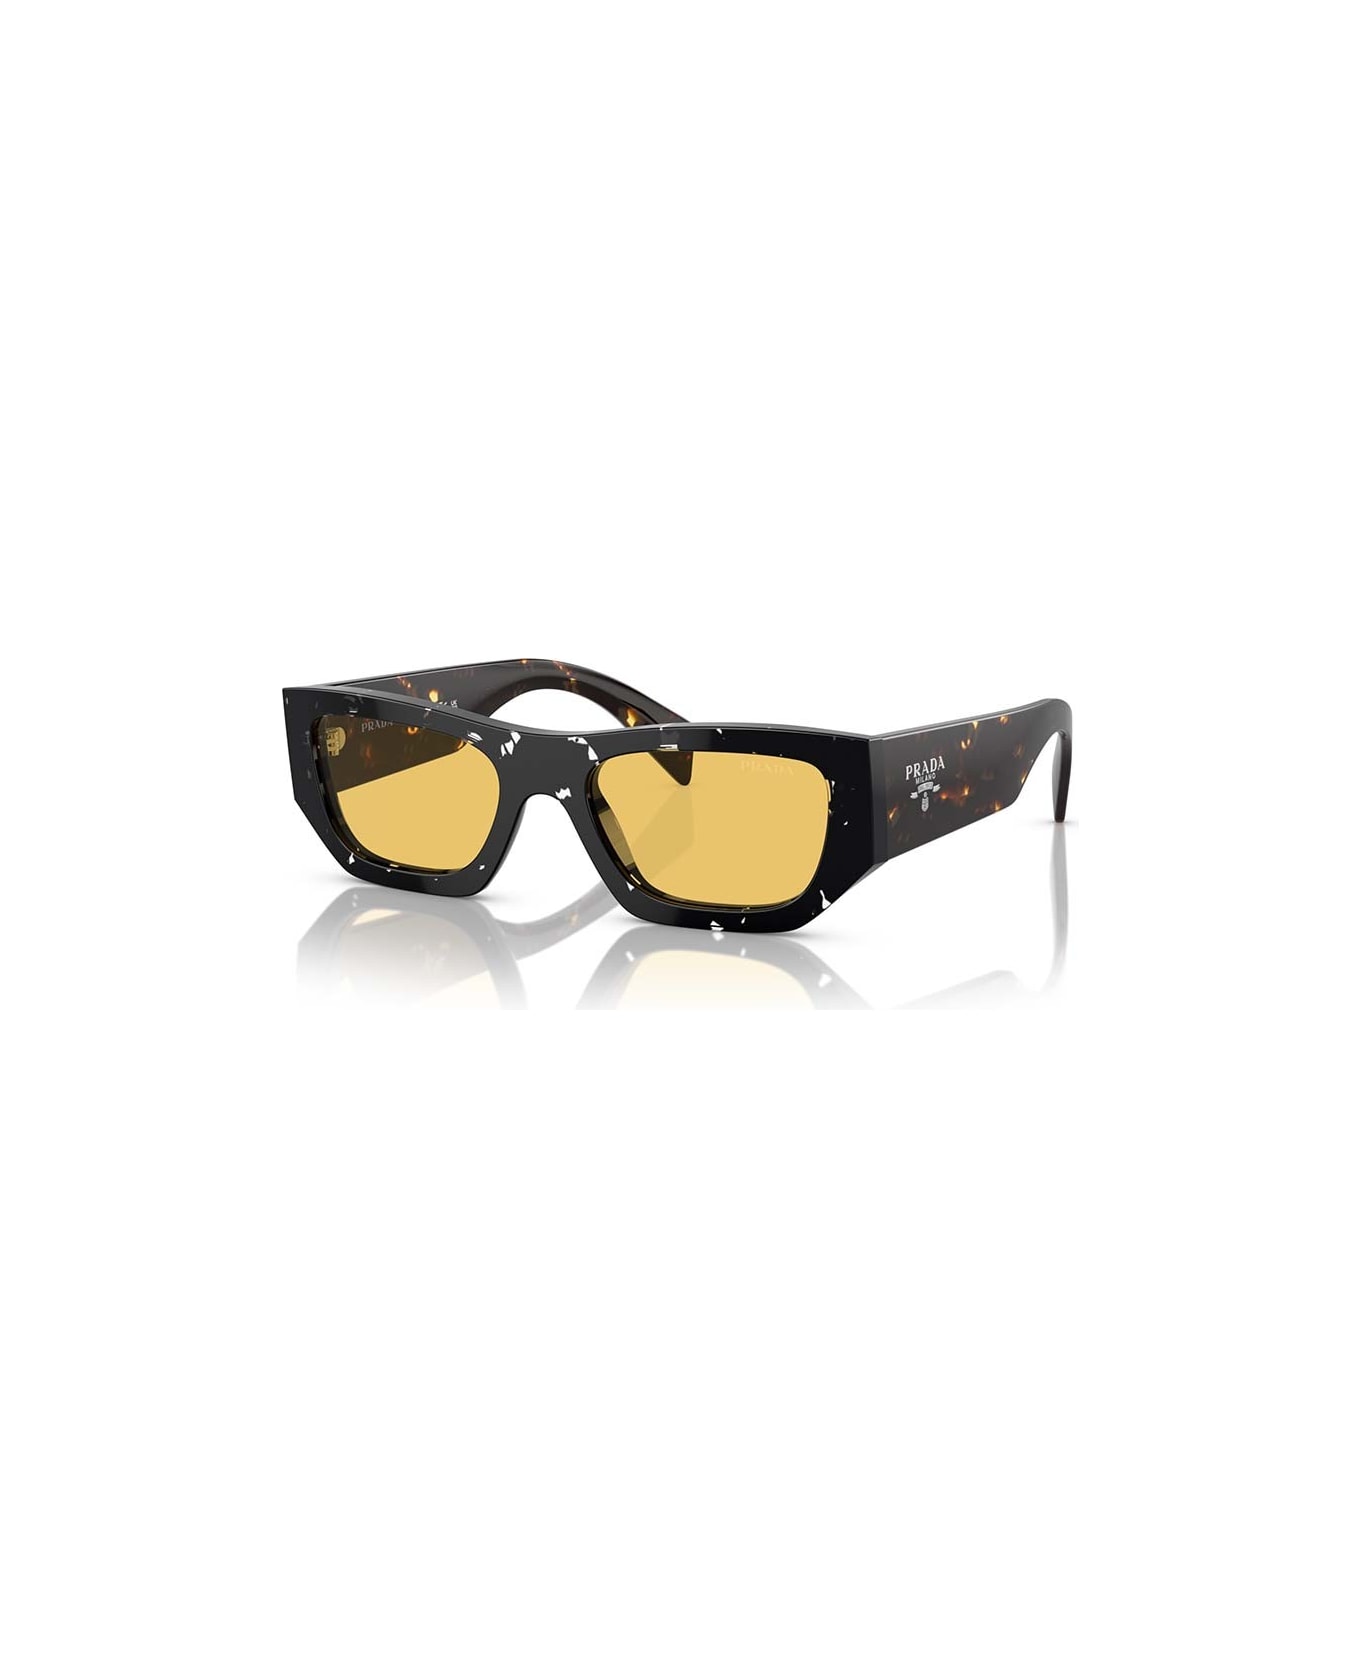 Prada Eyewear Sunglasses - Nero/Giallo